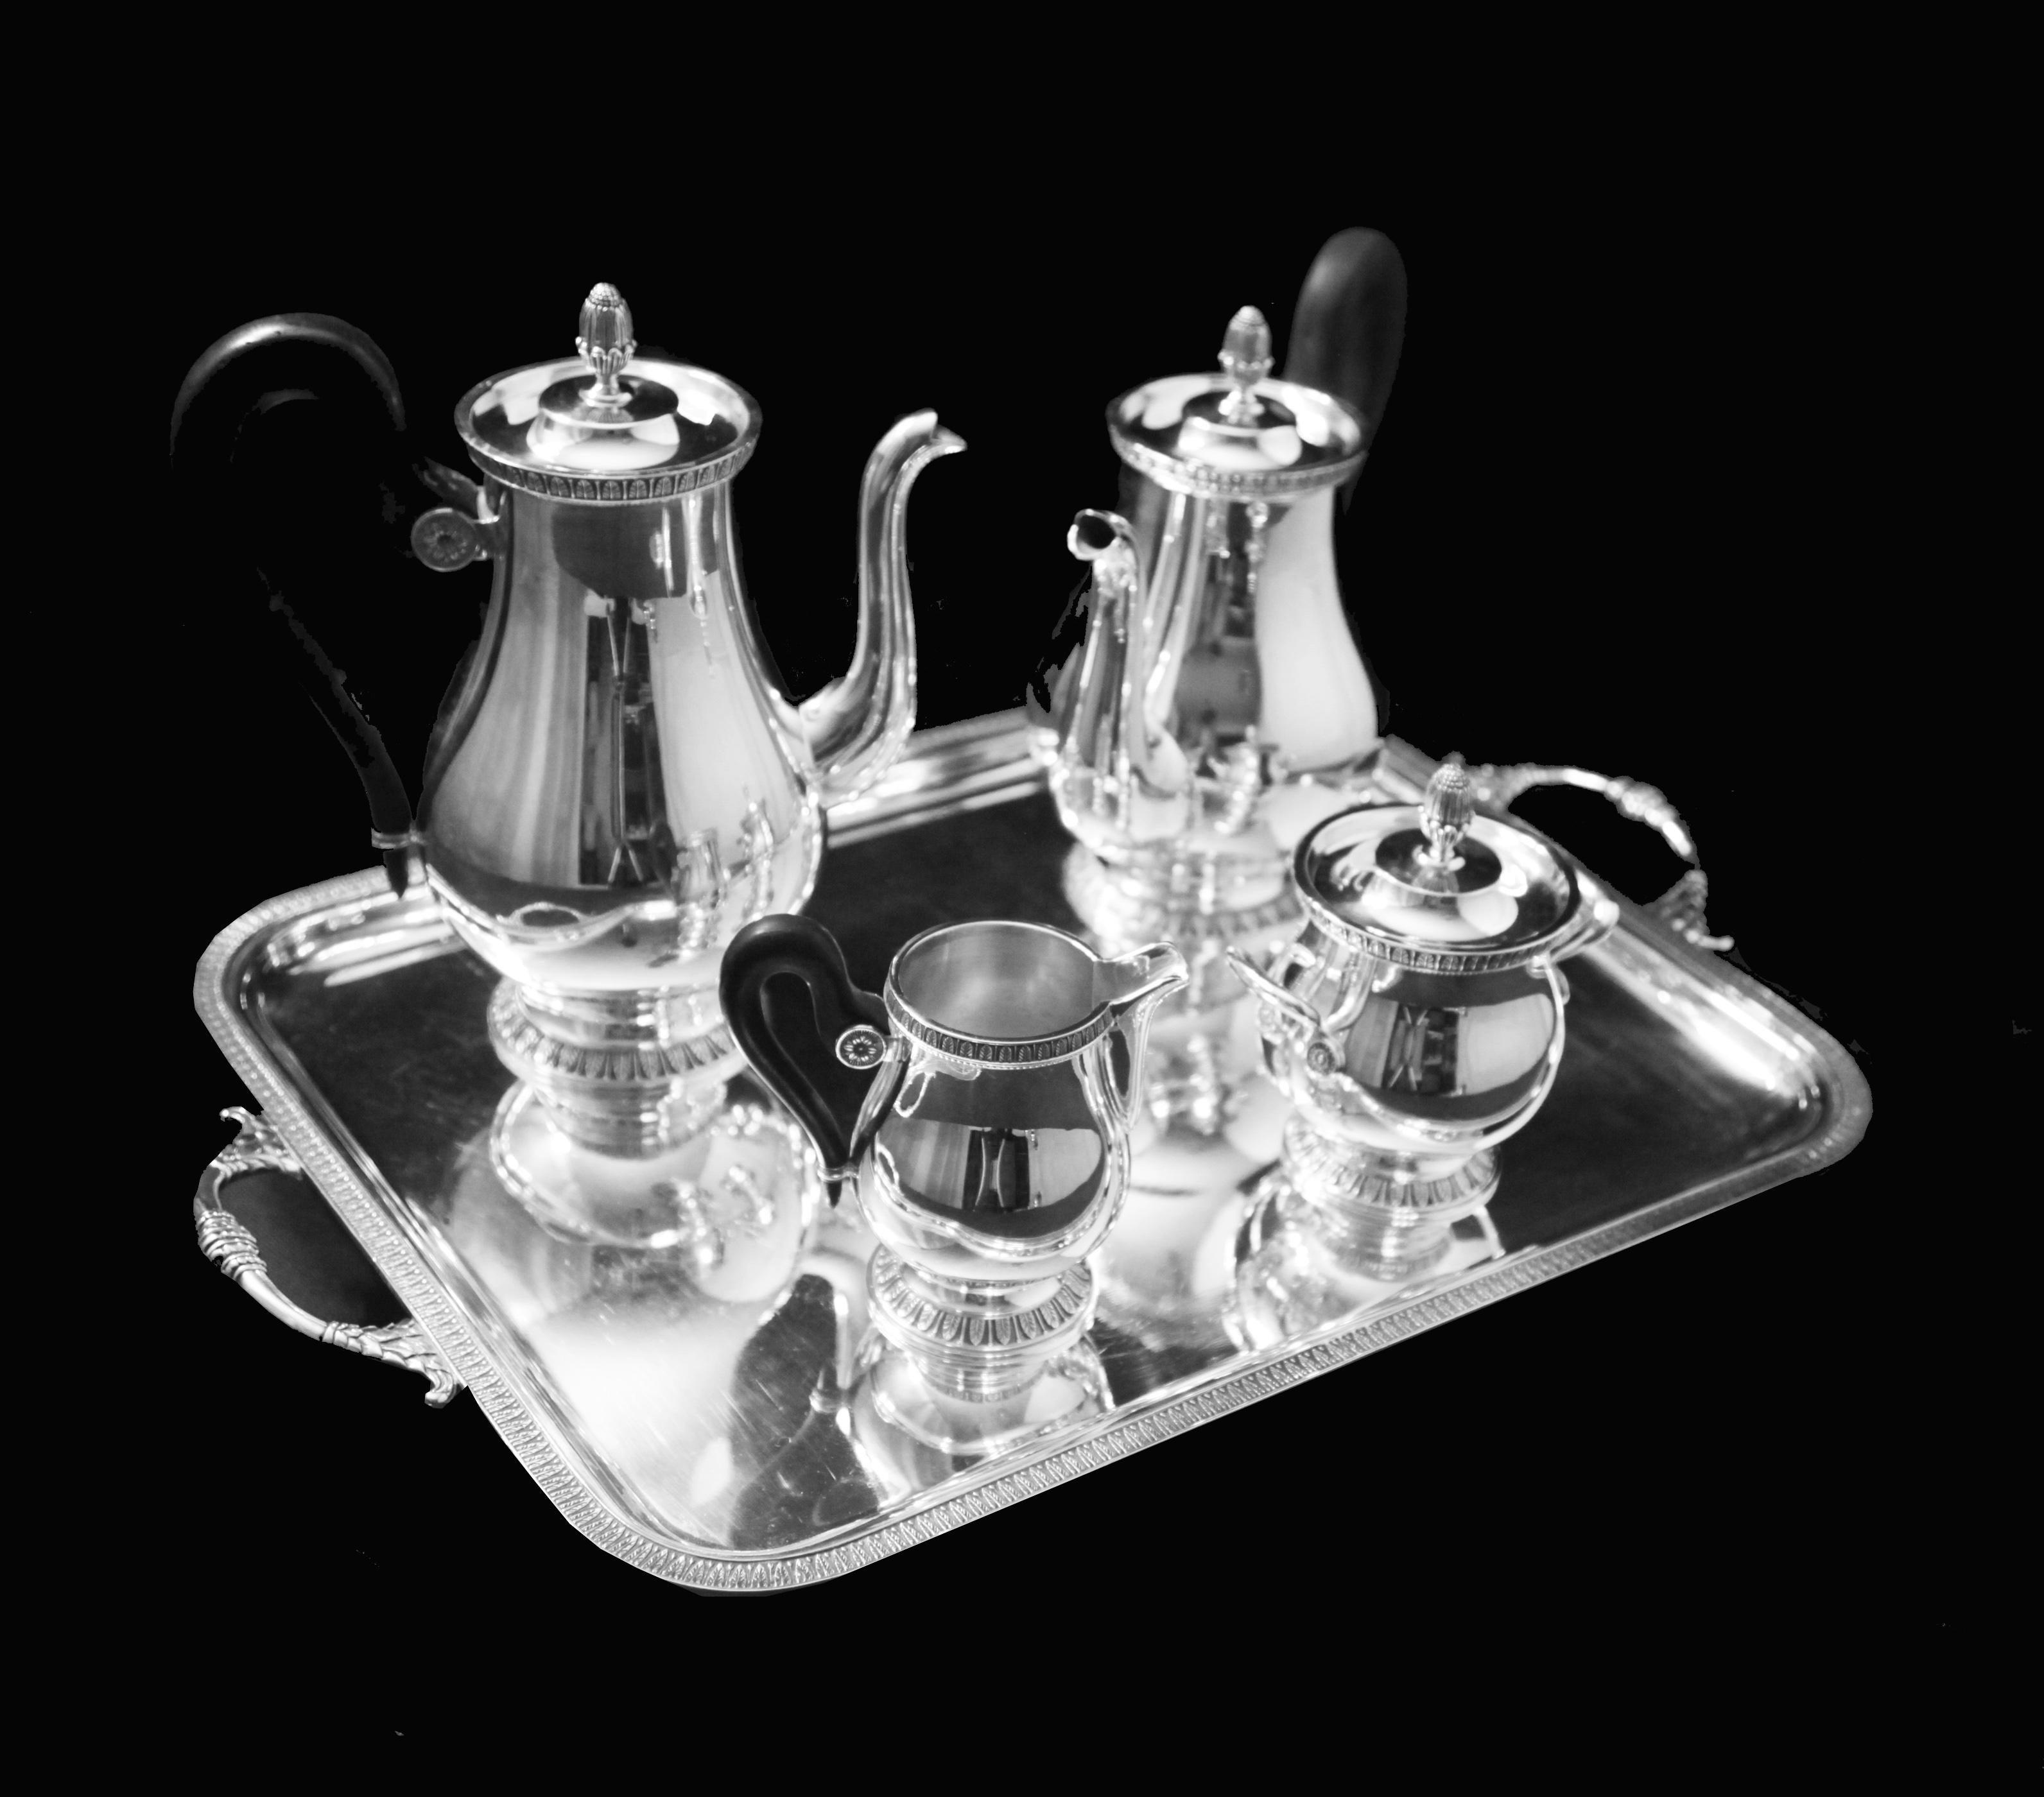 En provenance directe de Paris, un magnifique service à thé en métal argenté de style Louis XVI, composé de 5 pièces, réalisé par le premier orfèvre français 